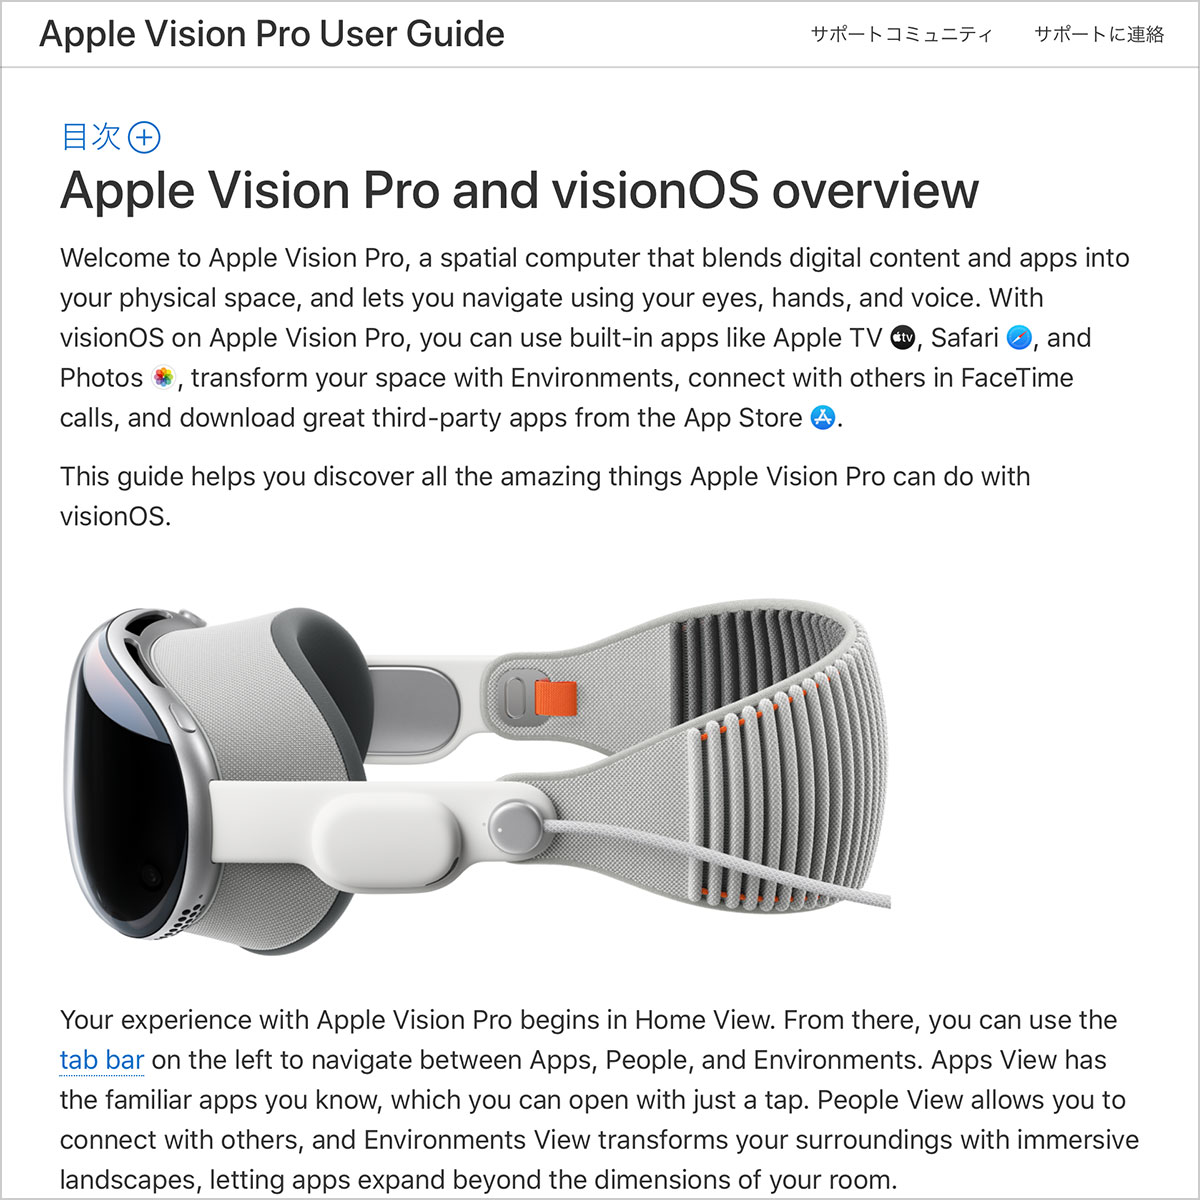 Apple Vision Pro ユーザガイド